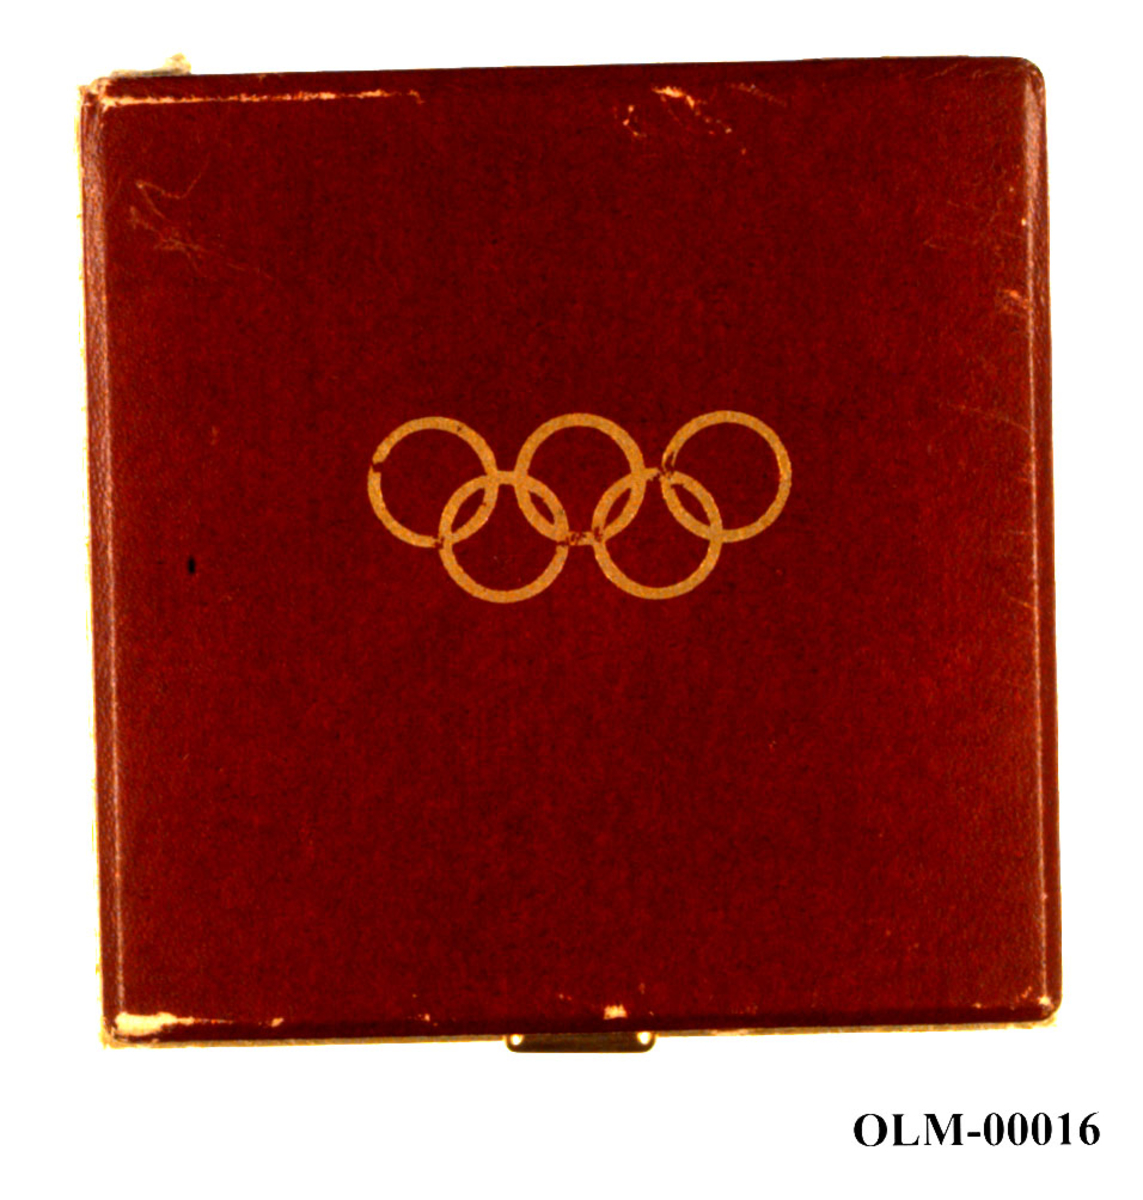 Bronsefargede minnemedaljer med motiv av rådhuset i Oslo, de olympiske ringene og snøkrystaller..